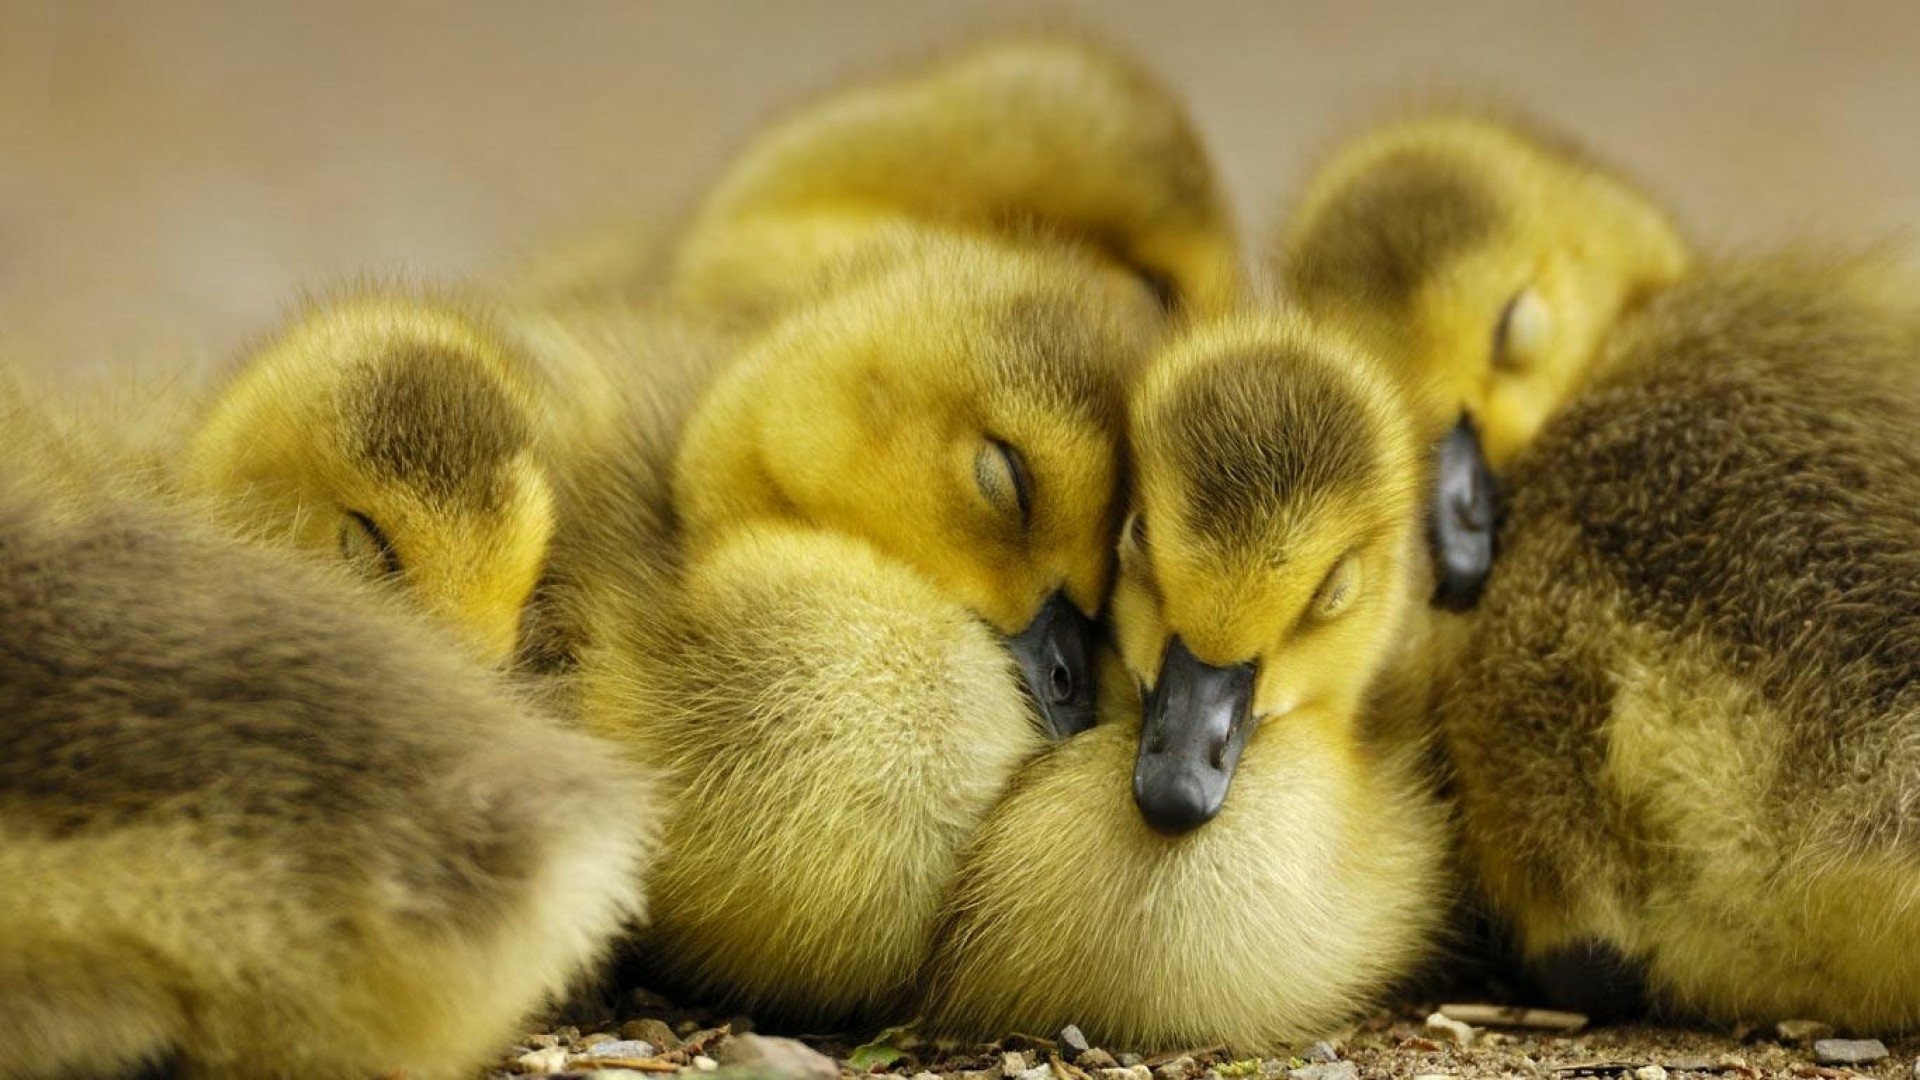 yellow baby ducks wallpaper